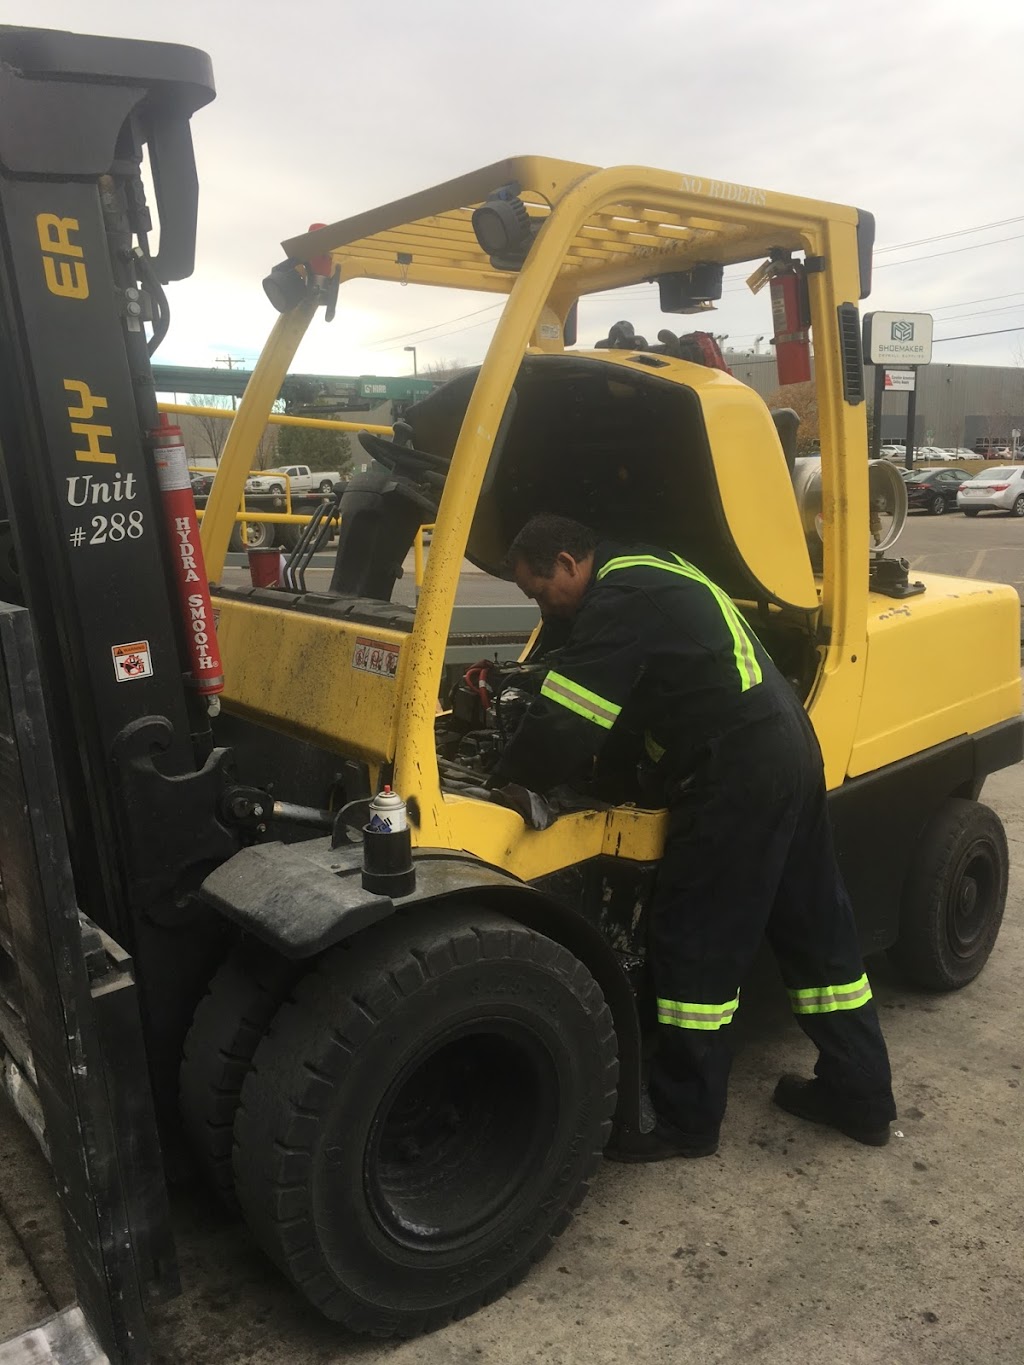 Premium Forklift | 6613 44 St SE #4, Calgary, AB T2C 2C9, Canada | Phone: (403) 272-3993